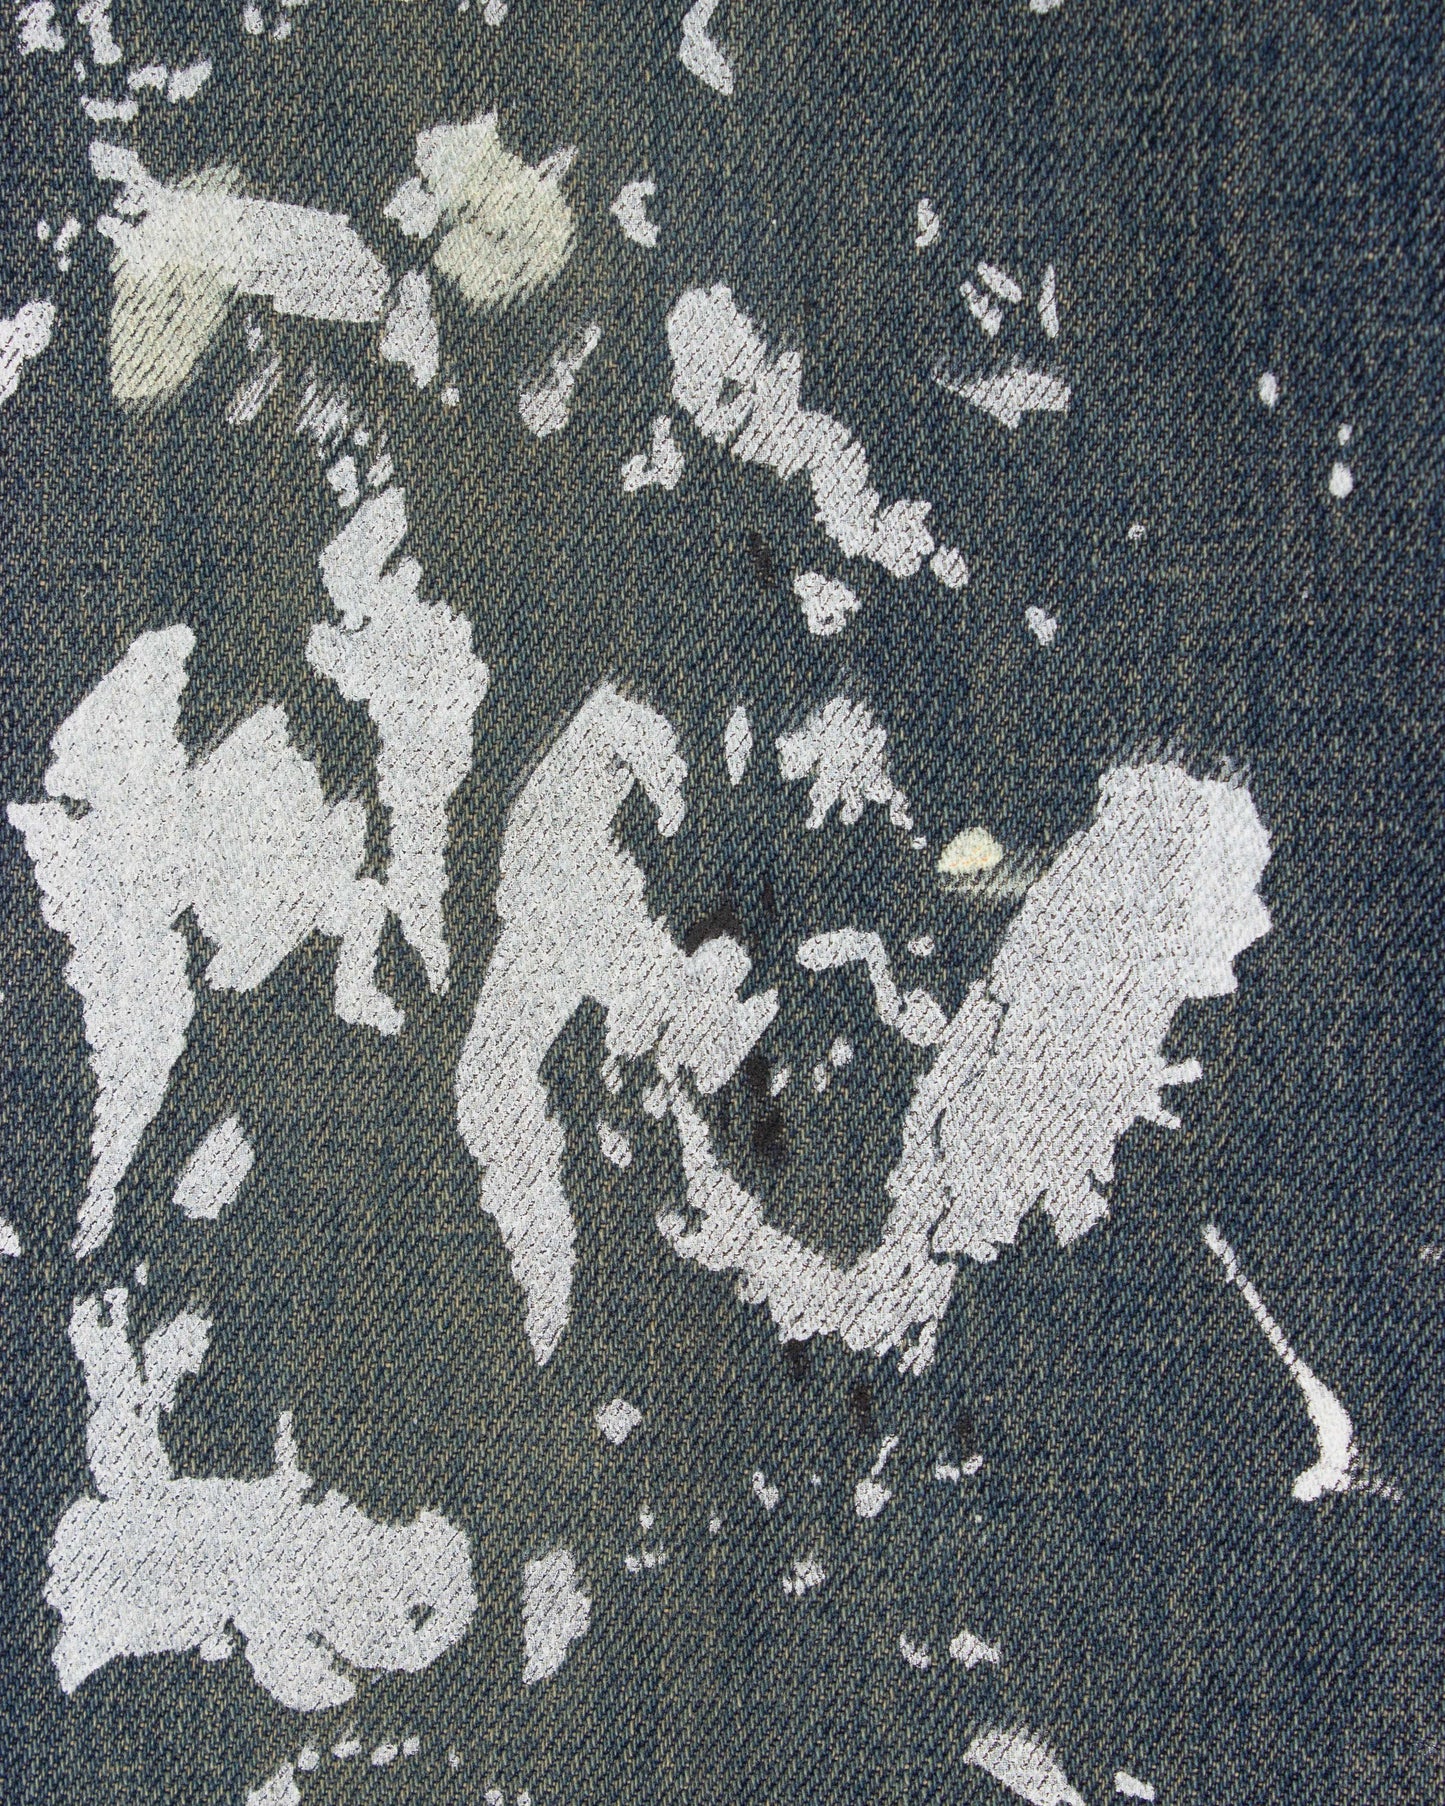 Painter Jeans (1998)